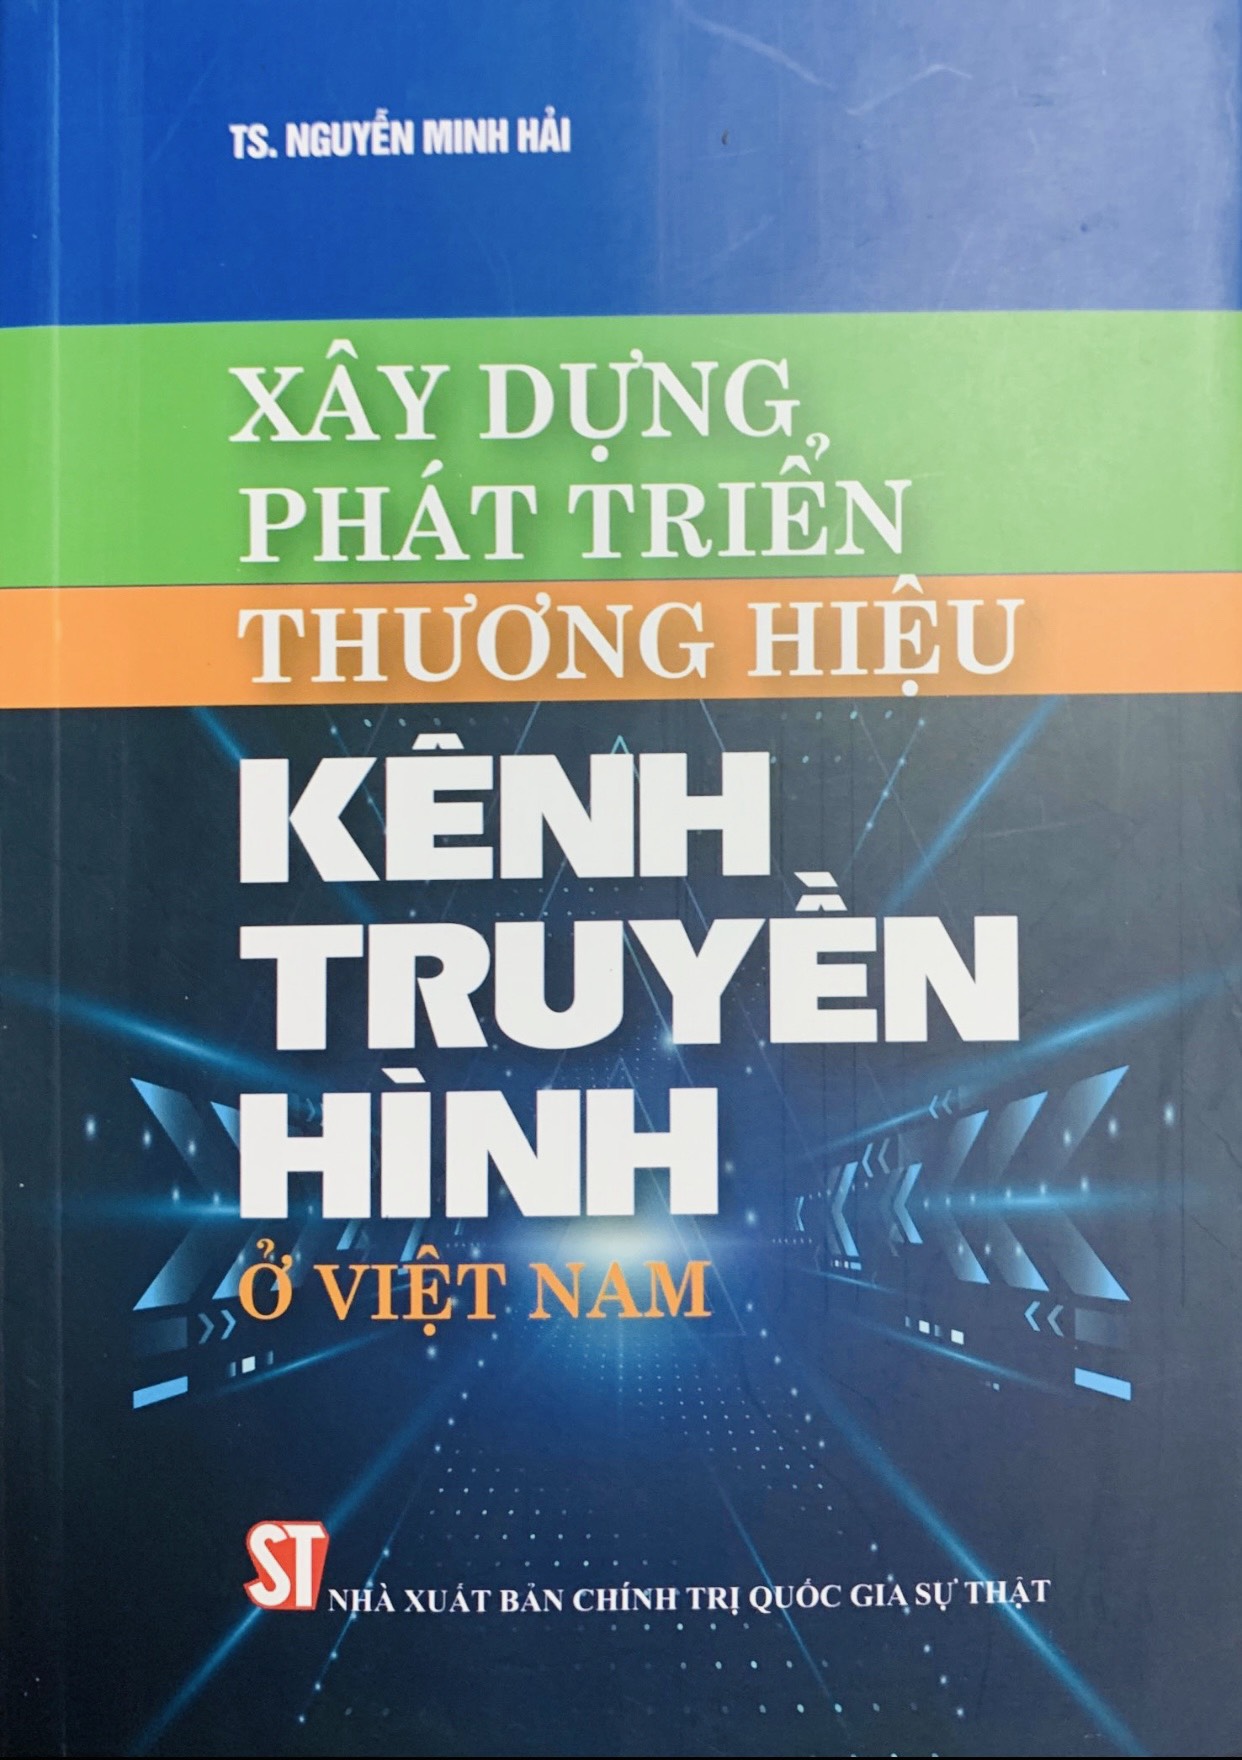 Xây dựng phát triển thương hiệu Kênh truyền hình ở Việt Nam